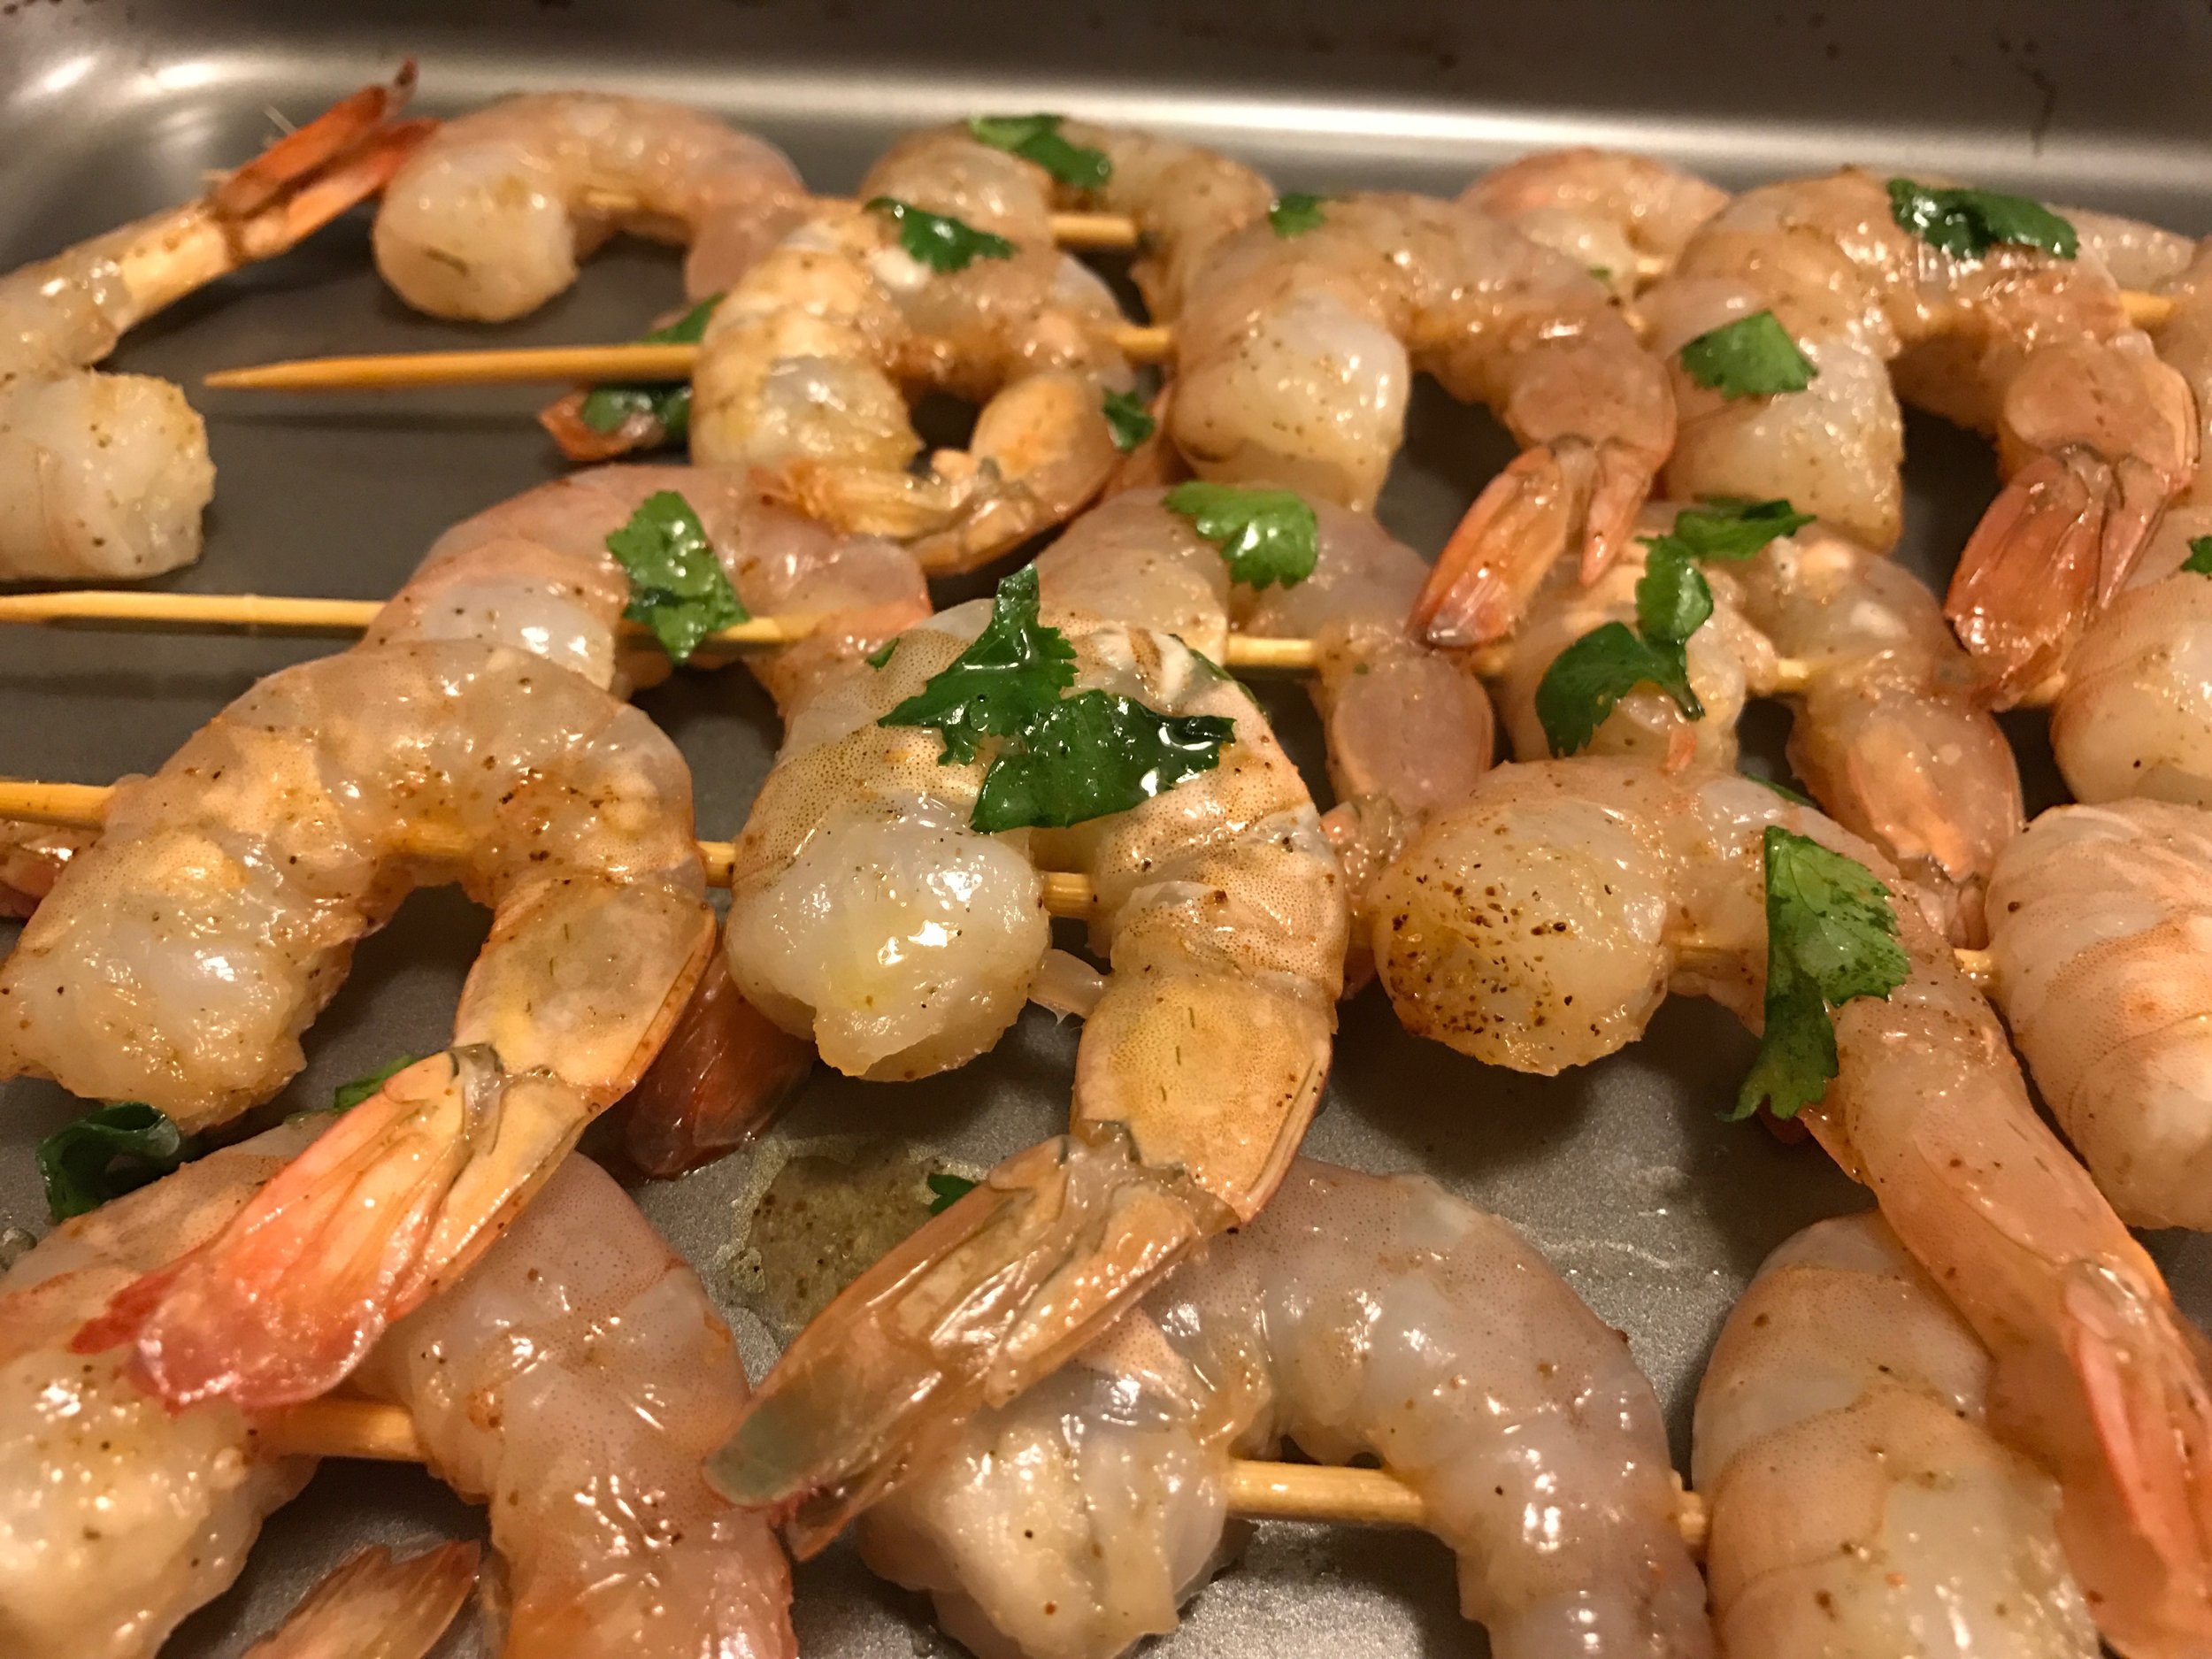 Shrimp prepped to grill